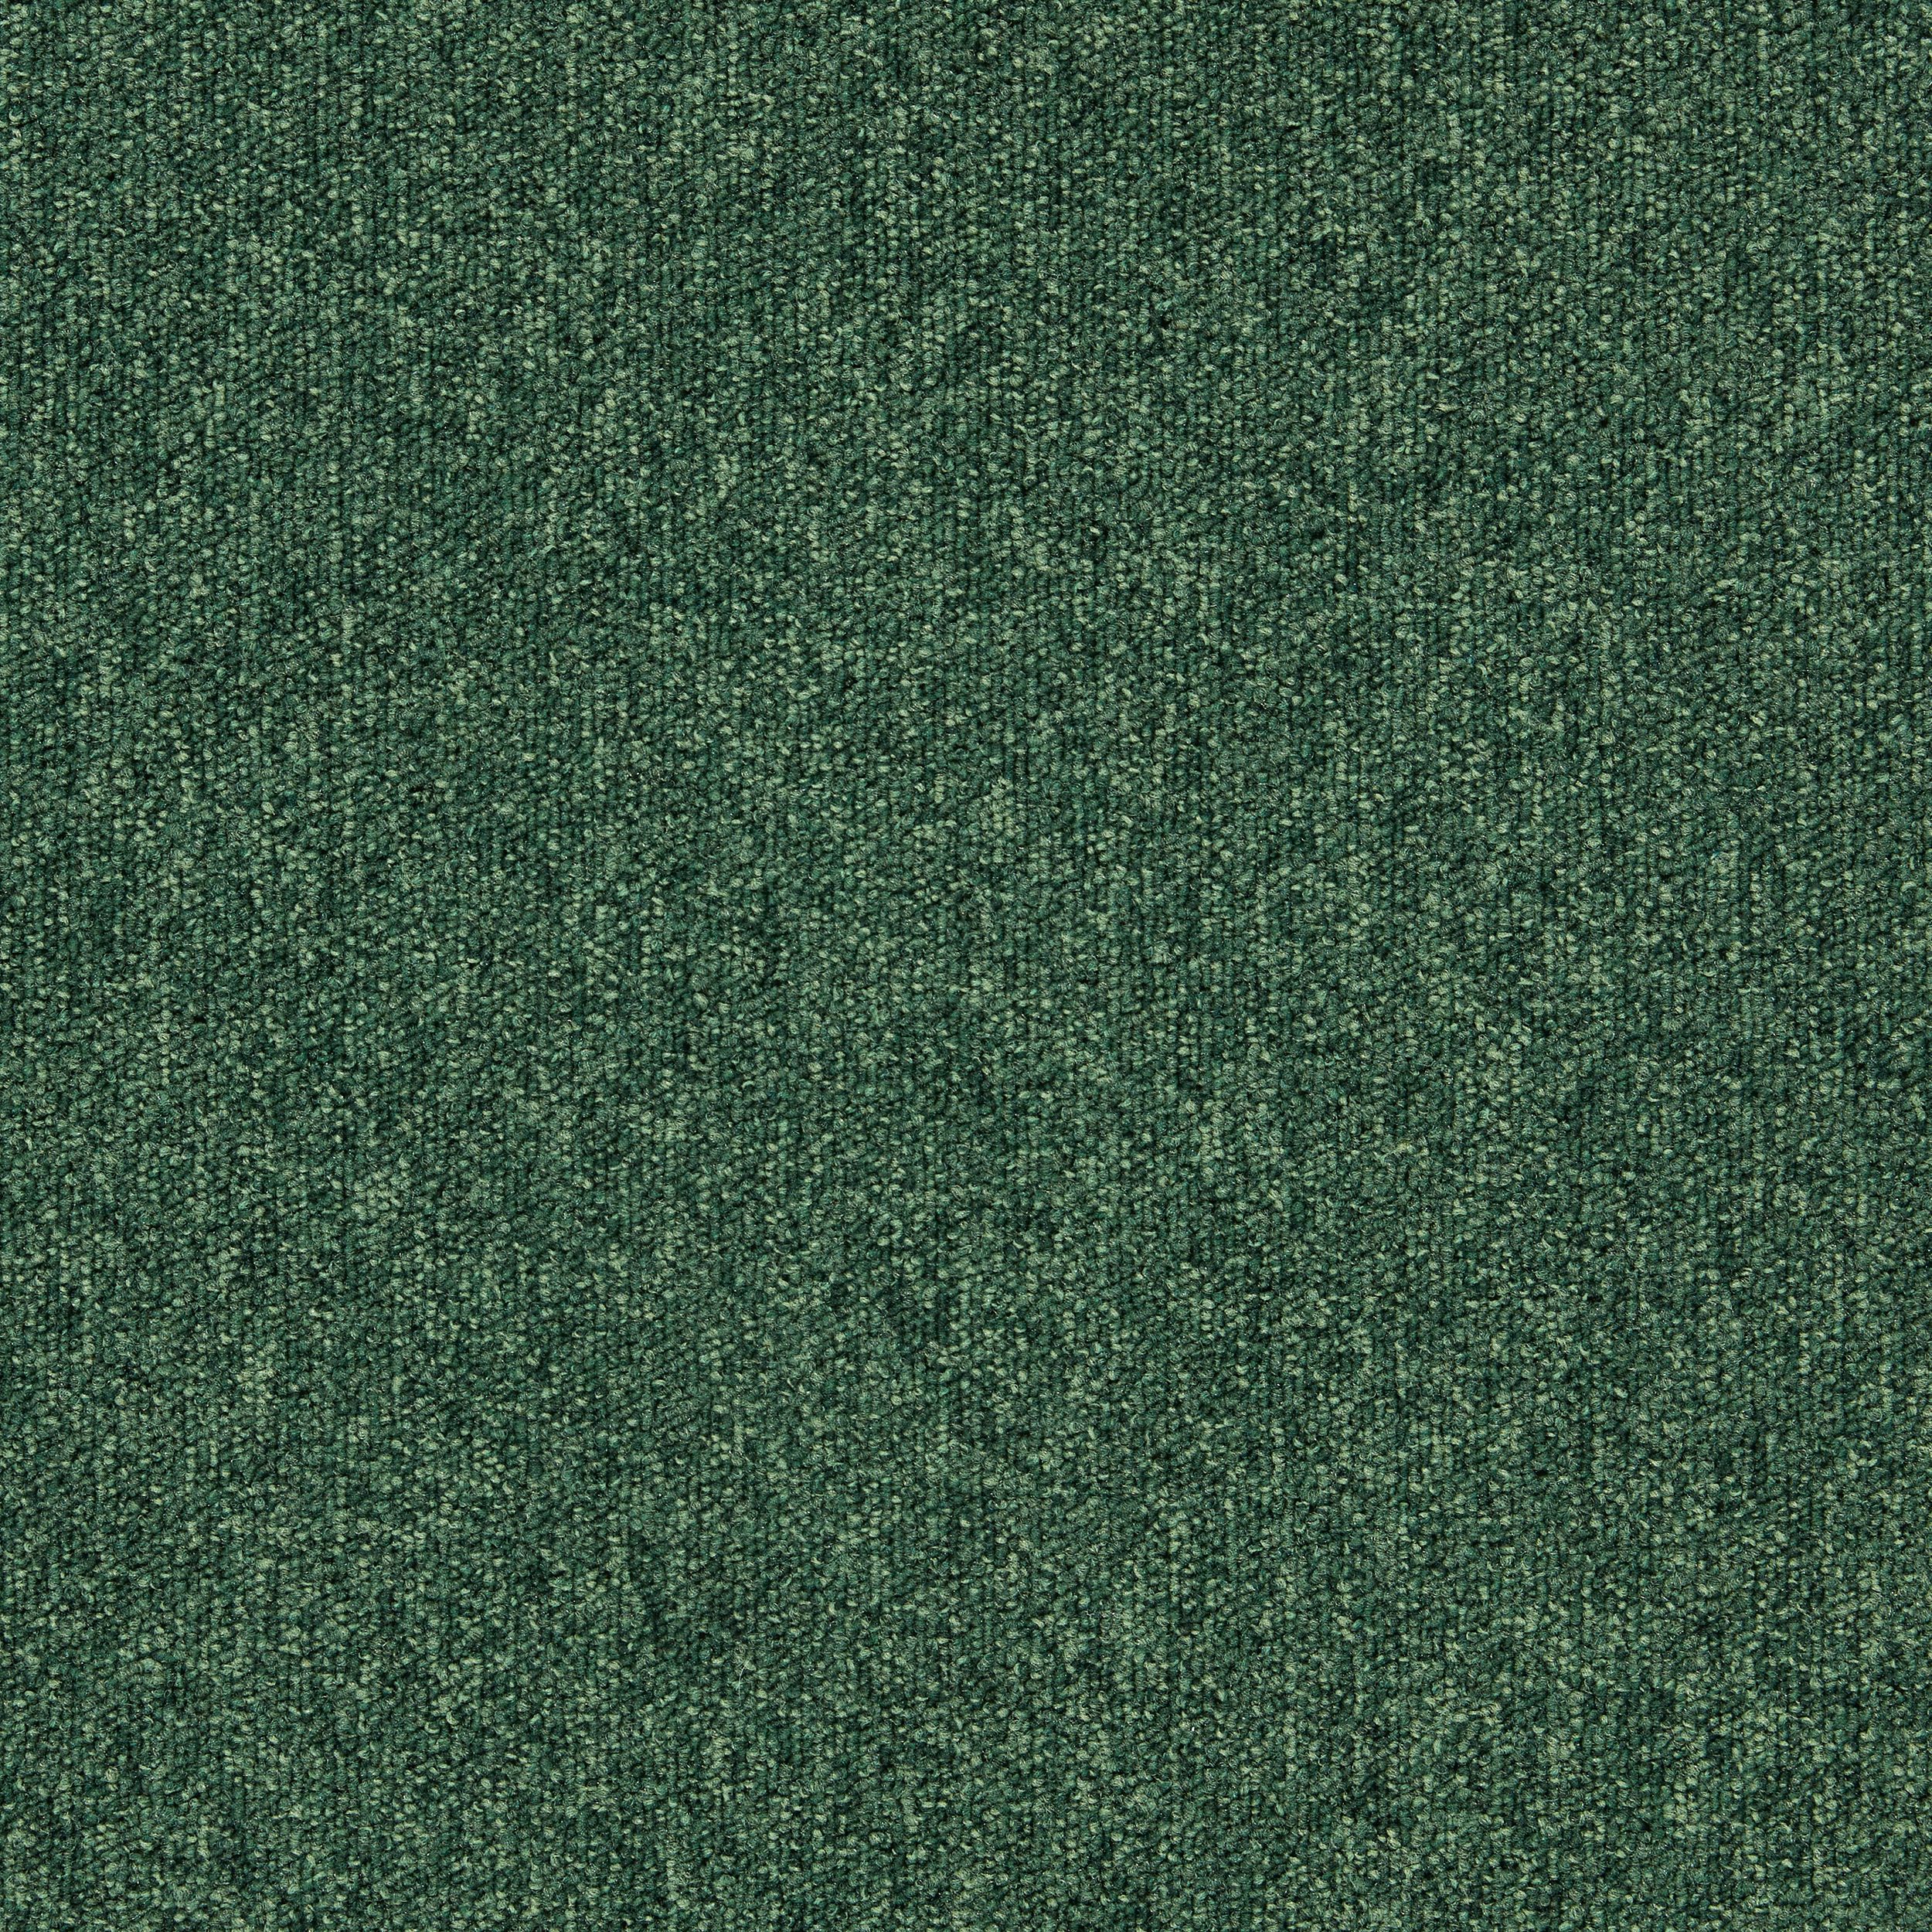 Heuga 727 Carpet Tile In Bottle Green afbeeldingnummer 2